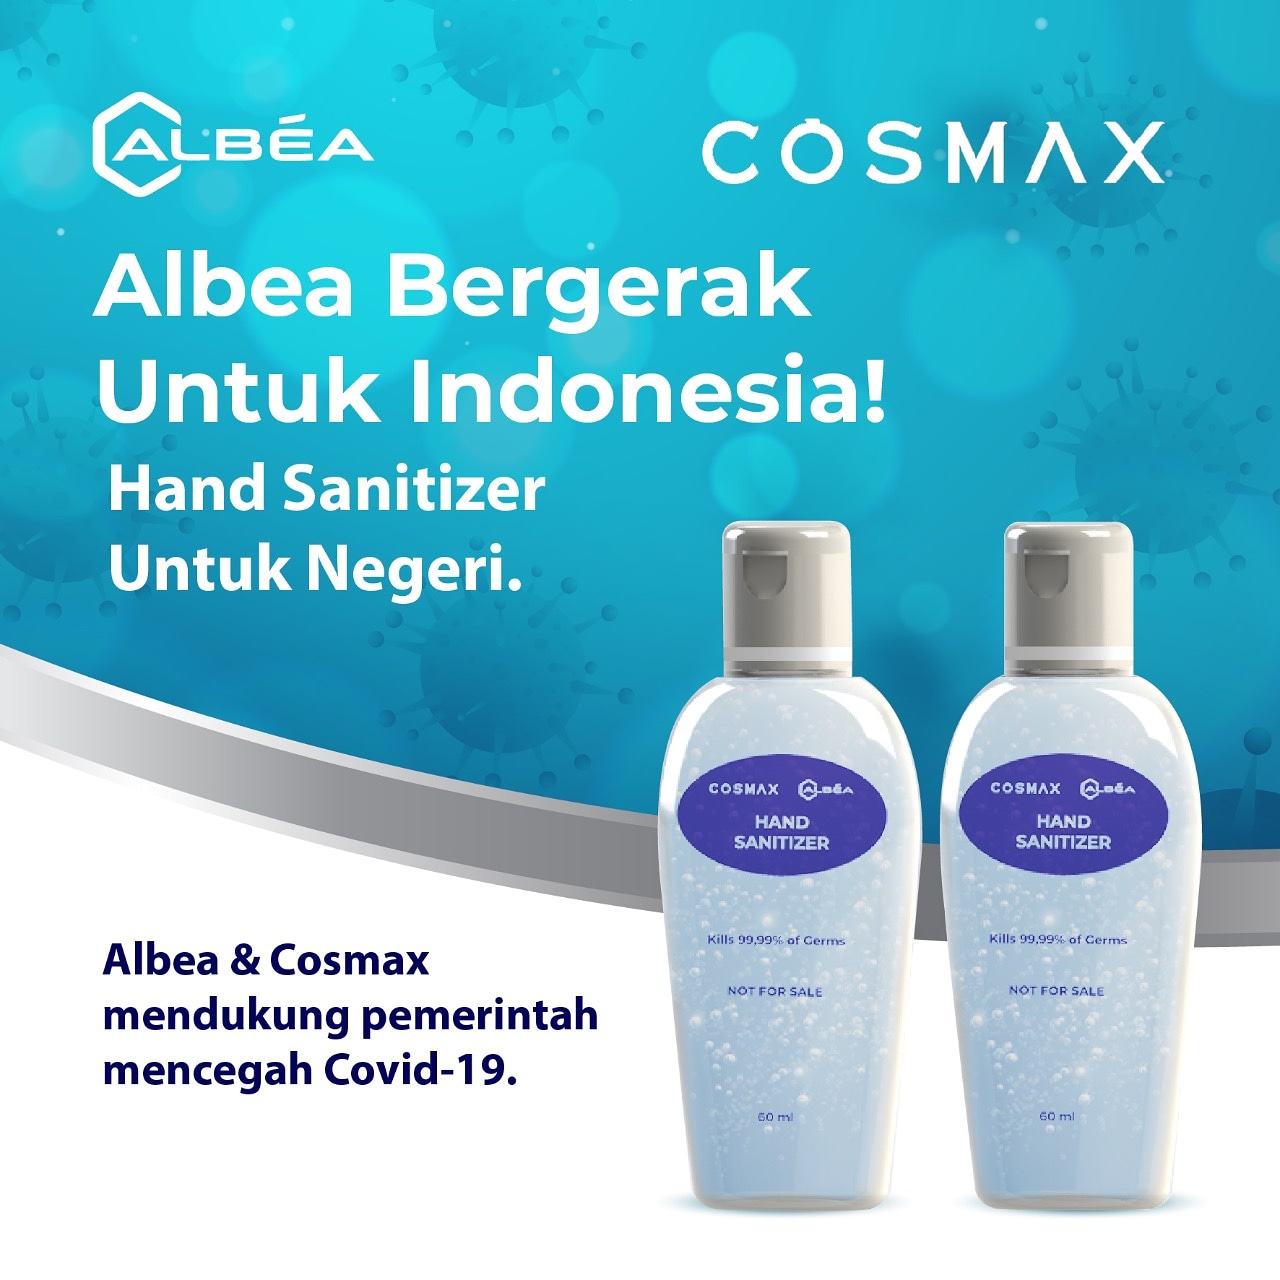 Albea Indonesia dan Cosmax Indonesia Hand Sanitizer untuk Negeri image